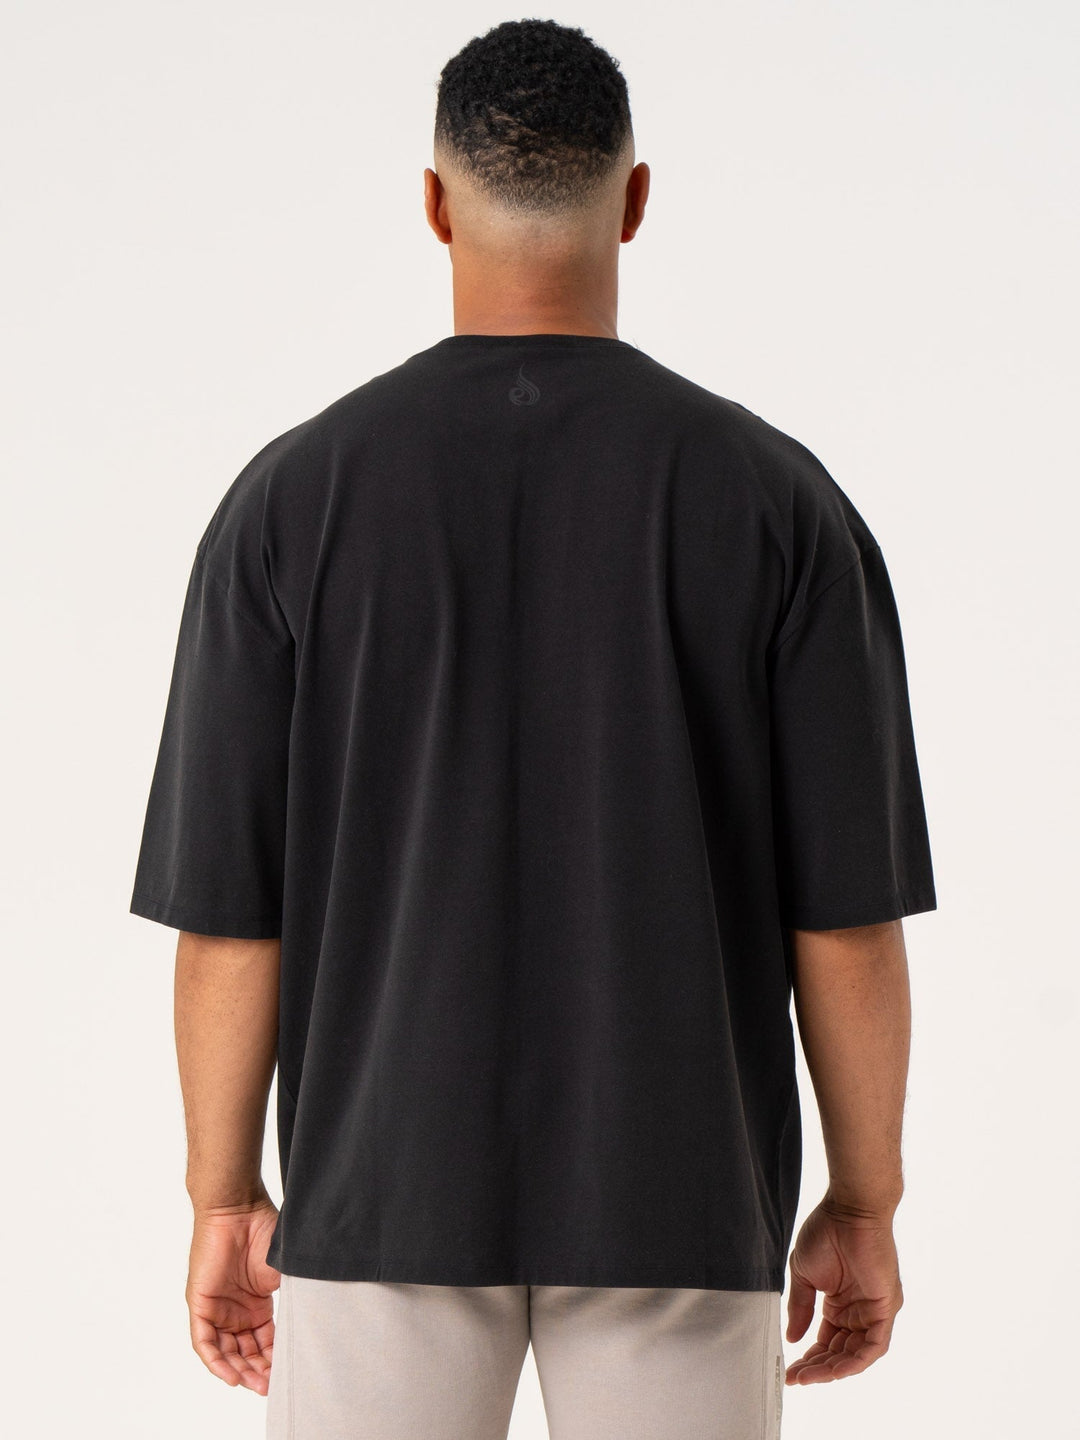 Pursuit Oversized T-Shirt - Black Stonewash Clothing Ryderwear 